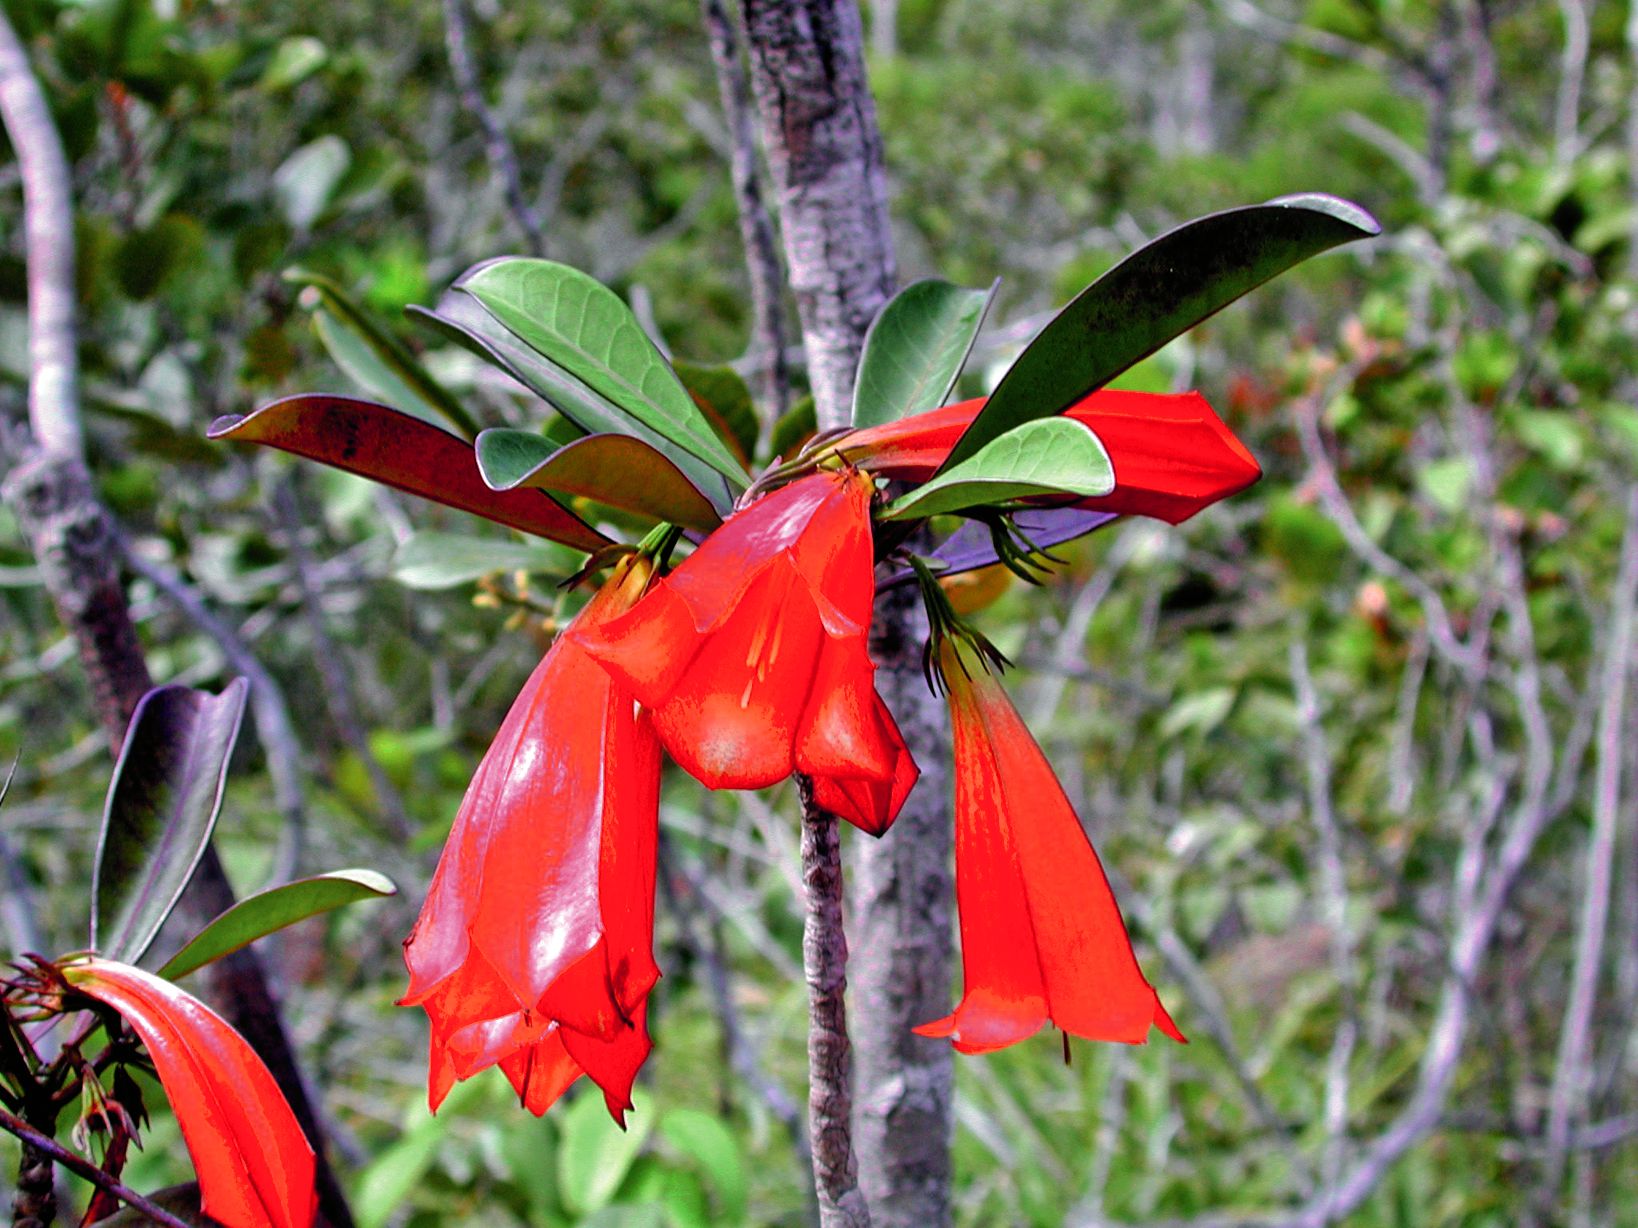 On ne trouve la Thiollierea lenormandii aux superbes fleurs rouges en clochettes que sur le massif du Koniambo, où l’exploitation minière génère des défrichements et l’érosion des terres.